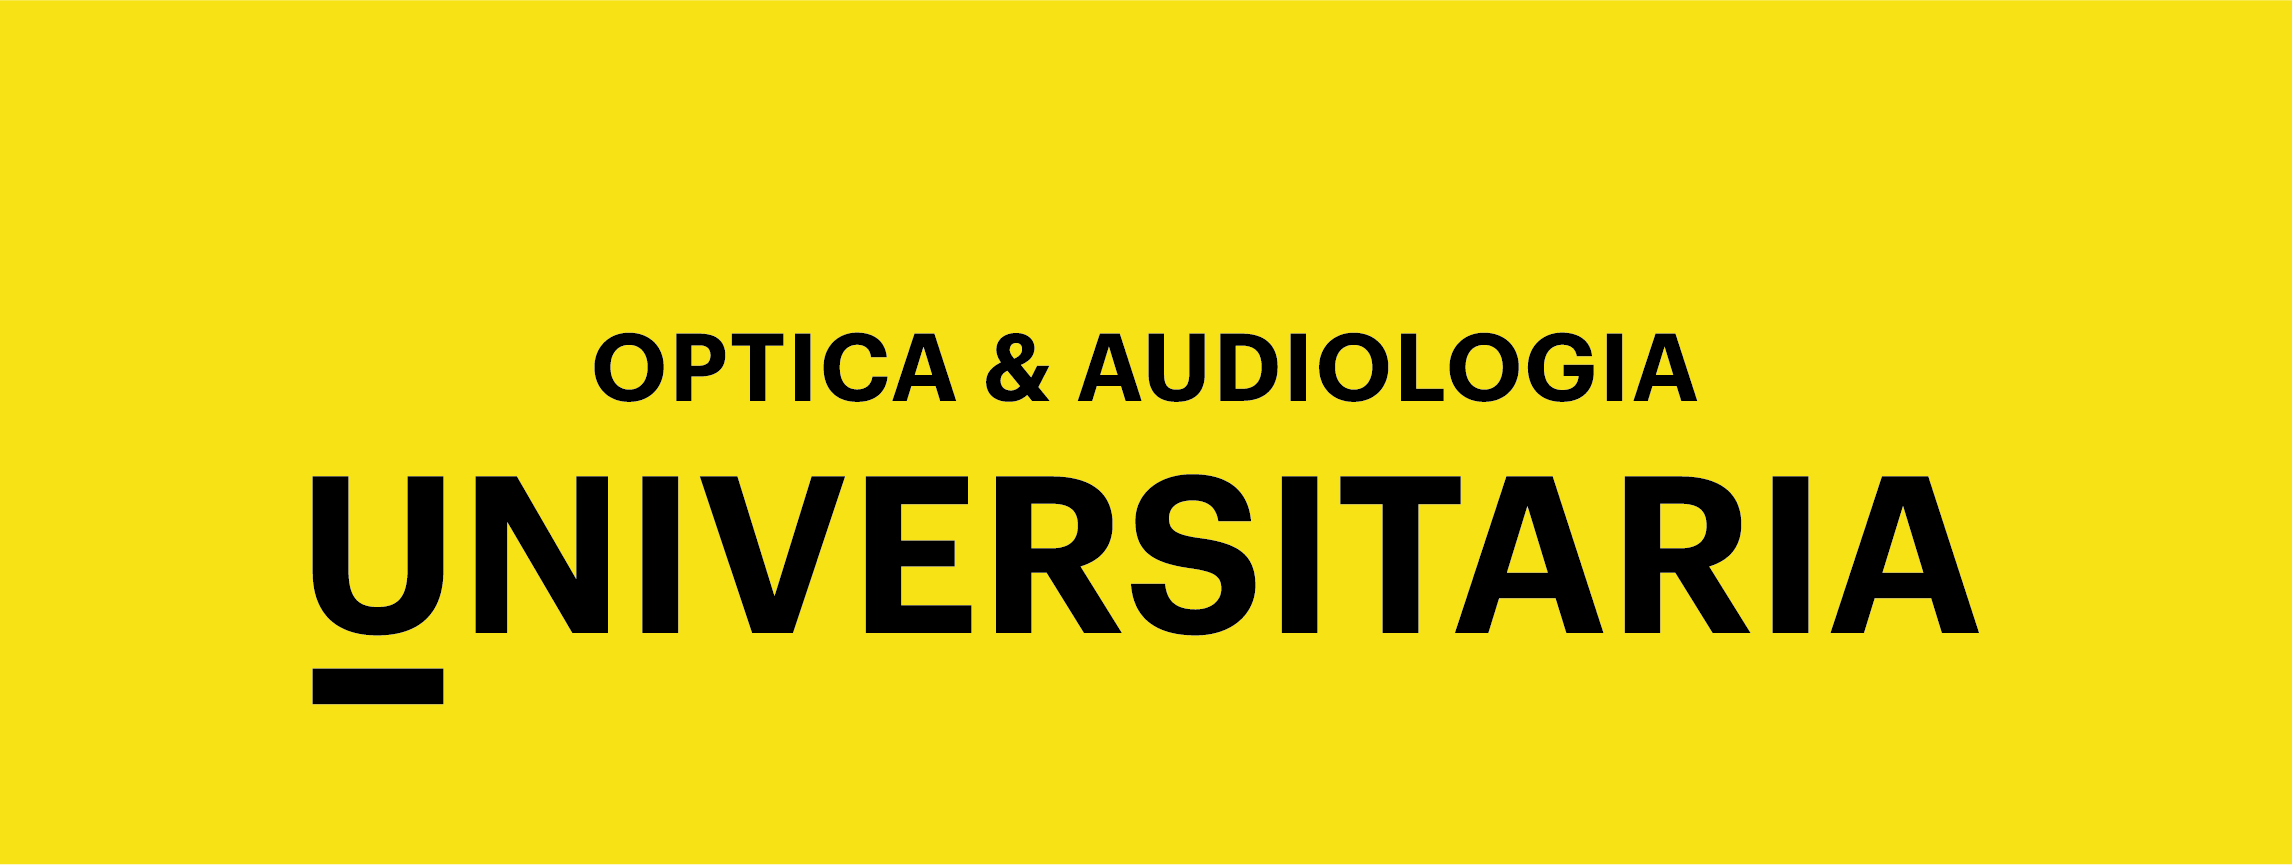 Logotip Optica Audiologia RGB